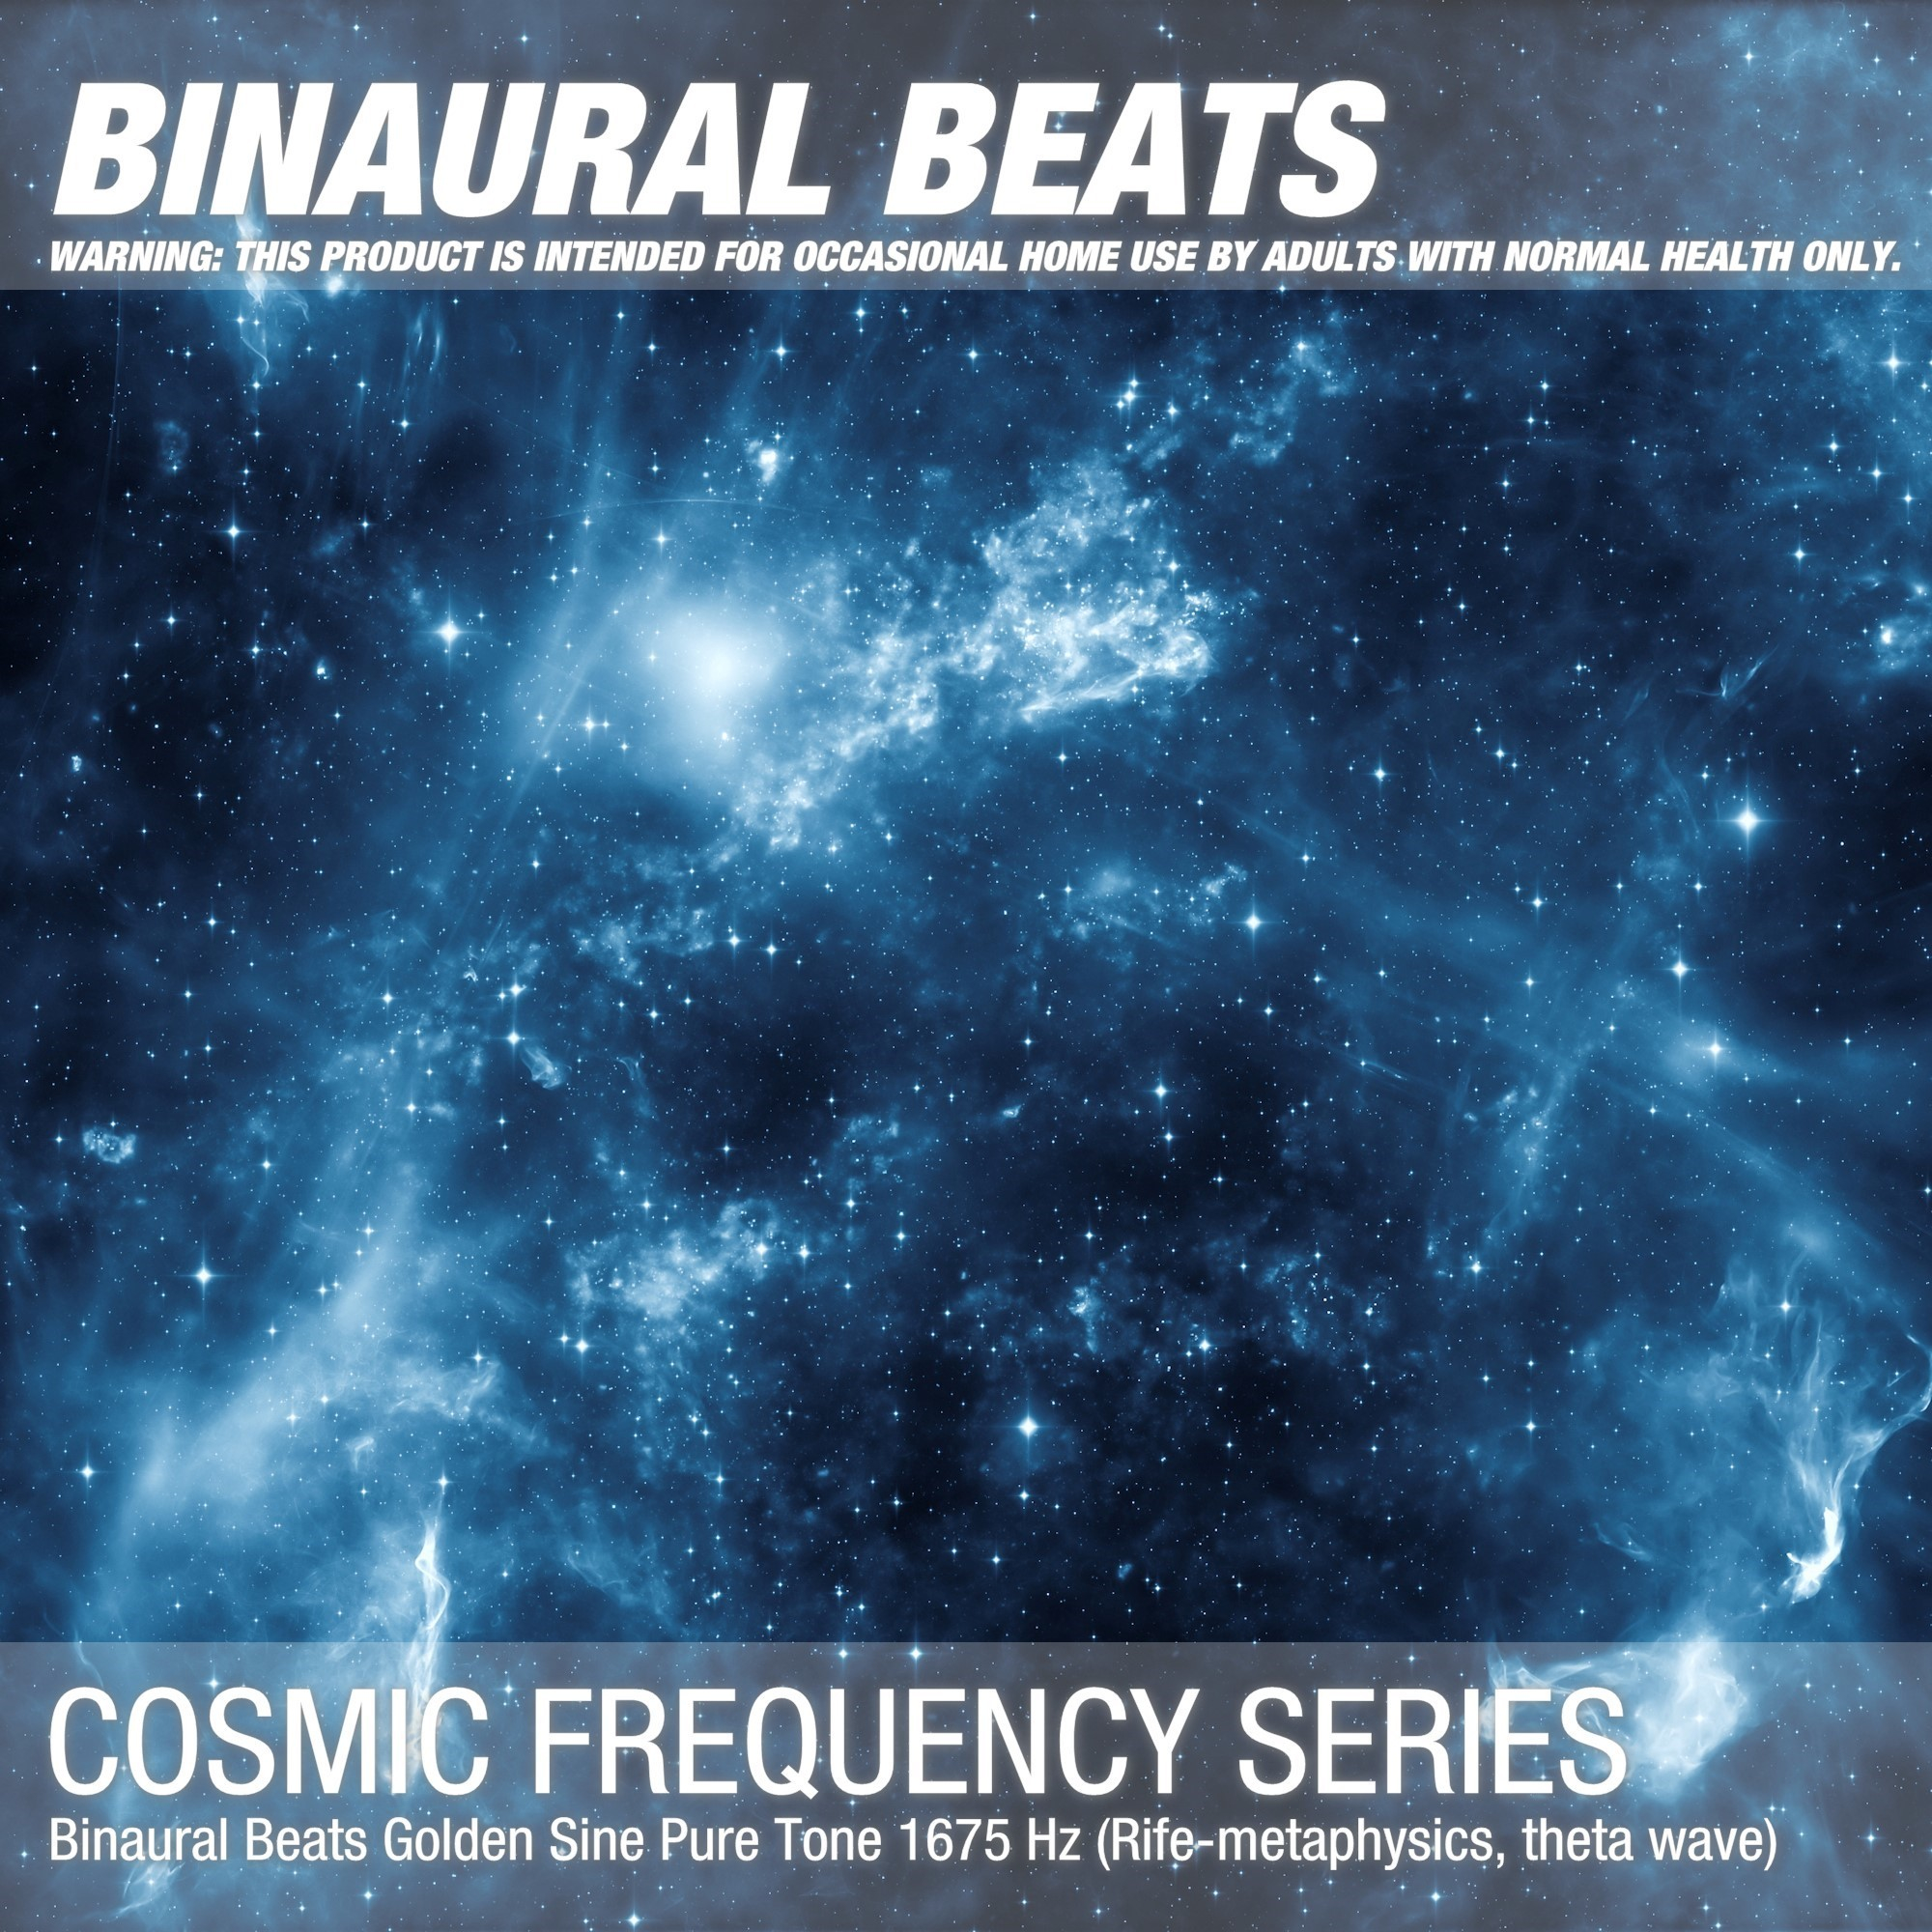 Binaural Beats Golden Sine Pure Tone 1675 Hz (Rife-metaphysics, theta wave)